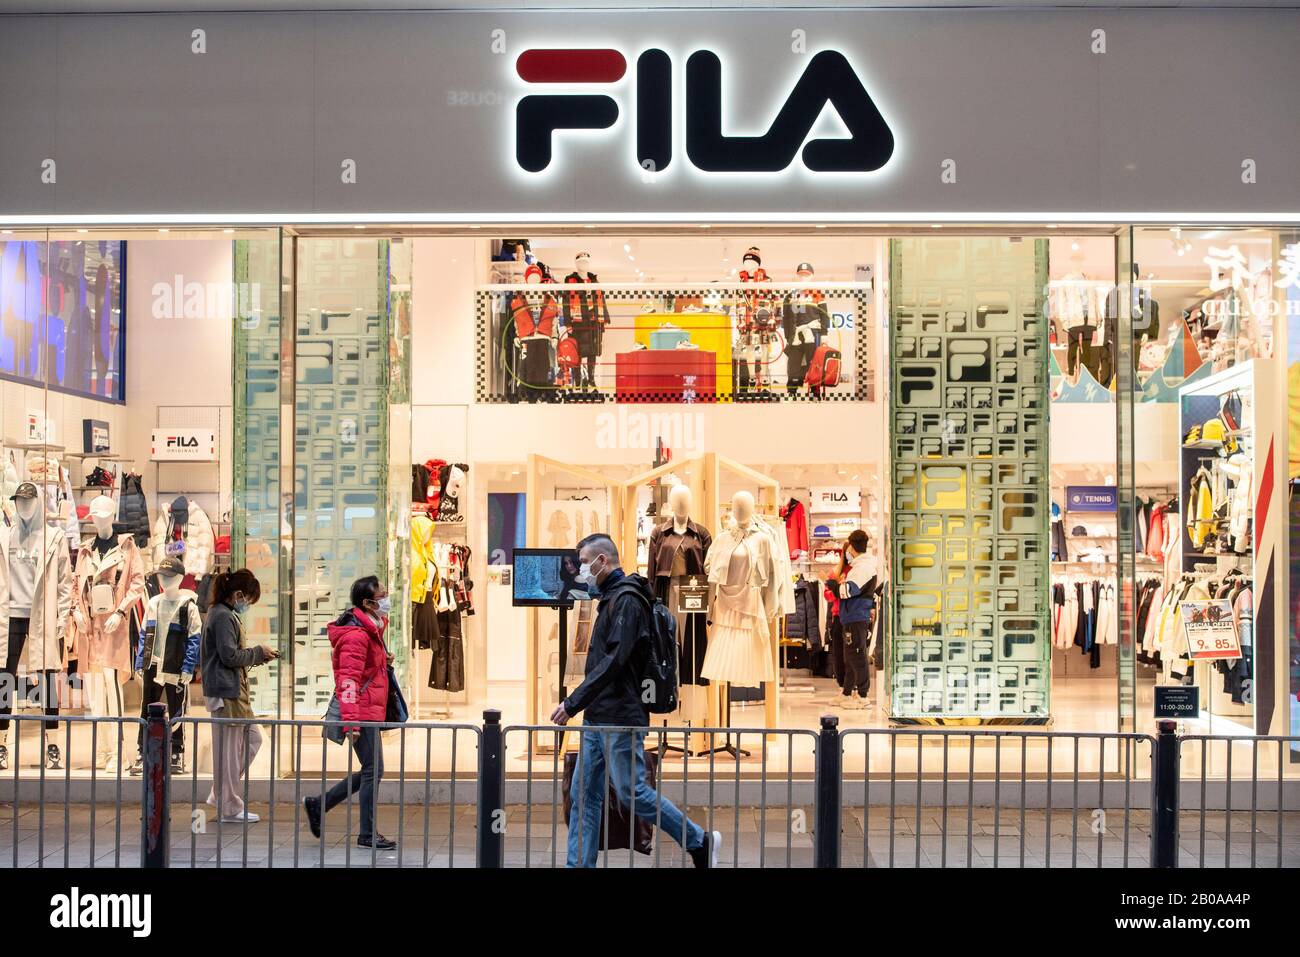 Italian sportswear goods brand Fila store seen in Hong Kong Stock